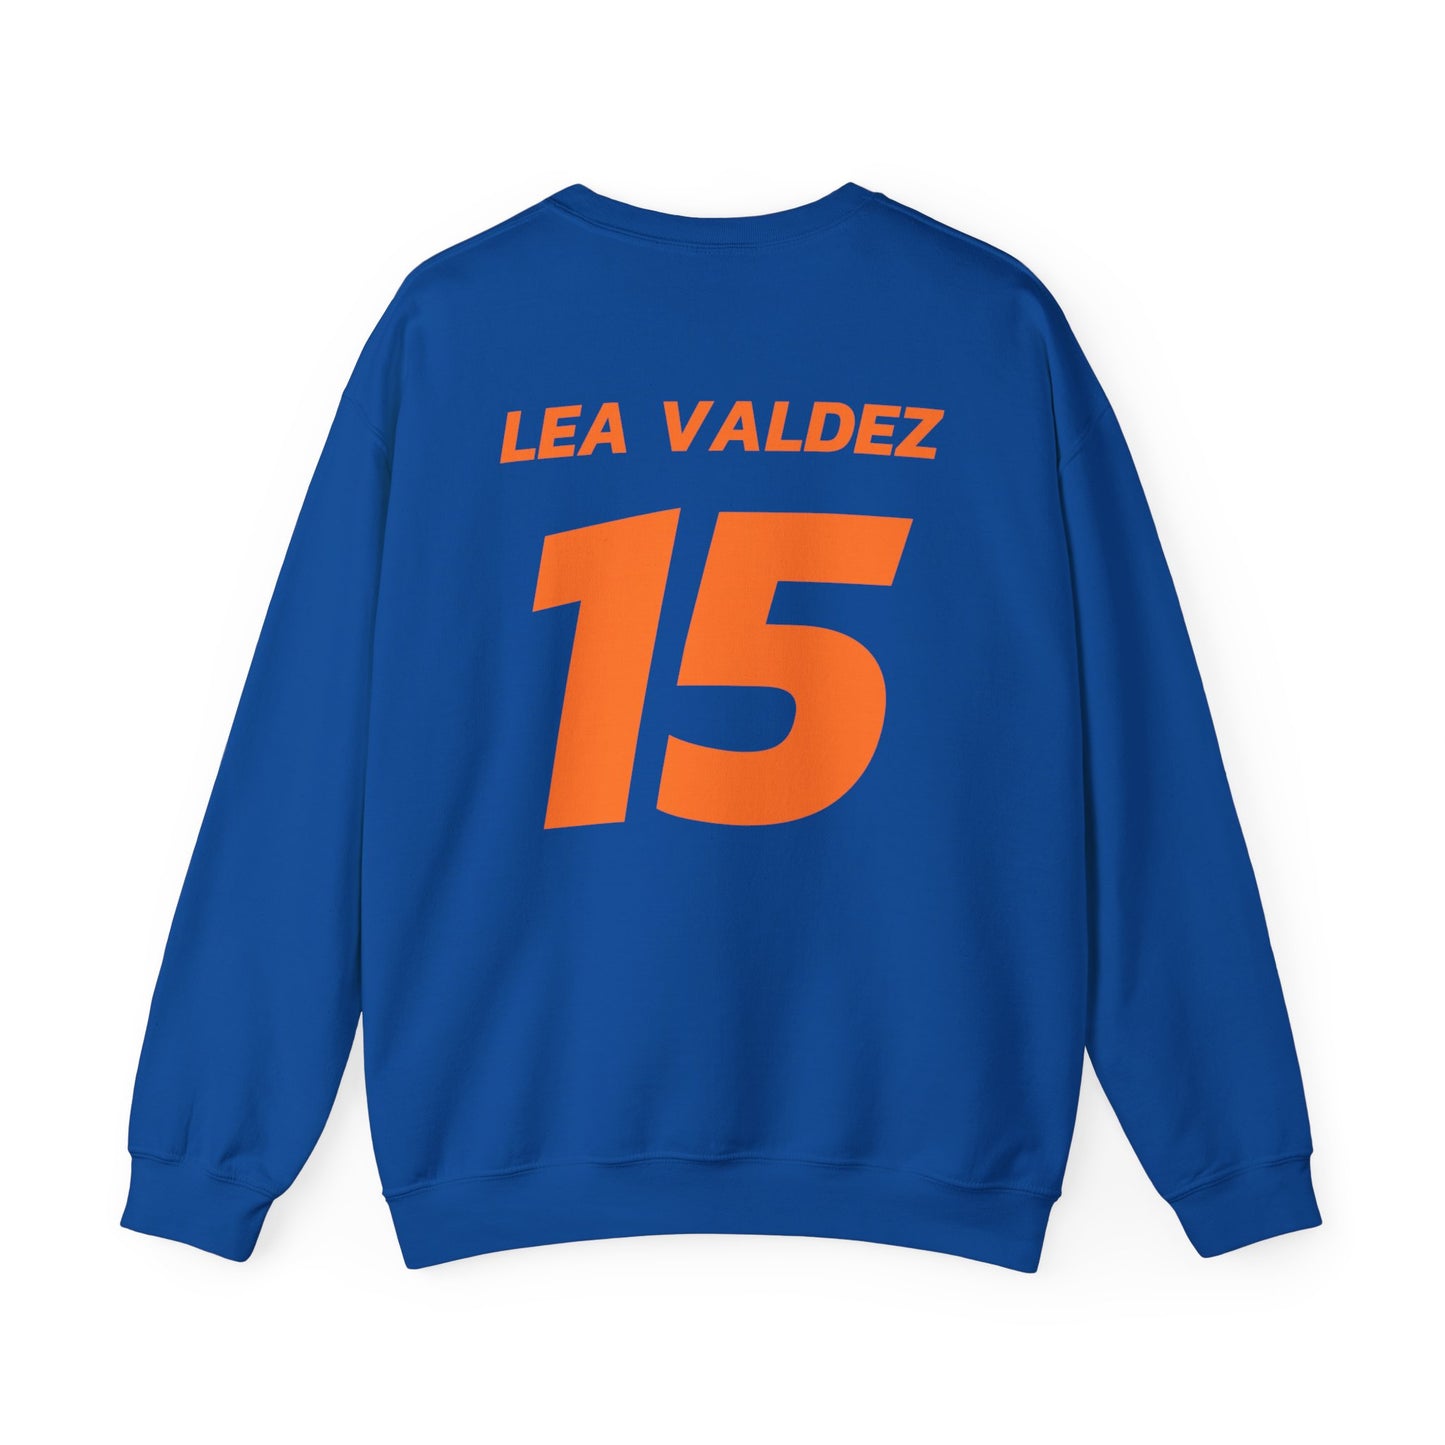 Lea Valdez: Essential Crewneck